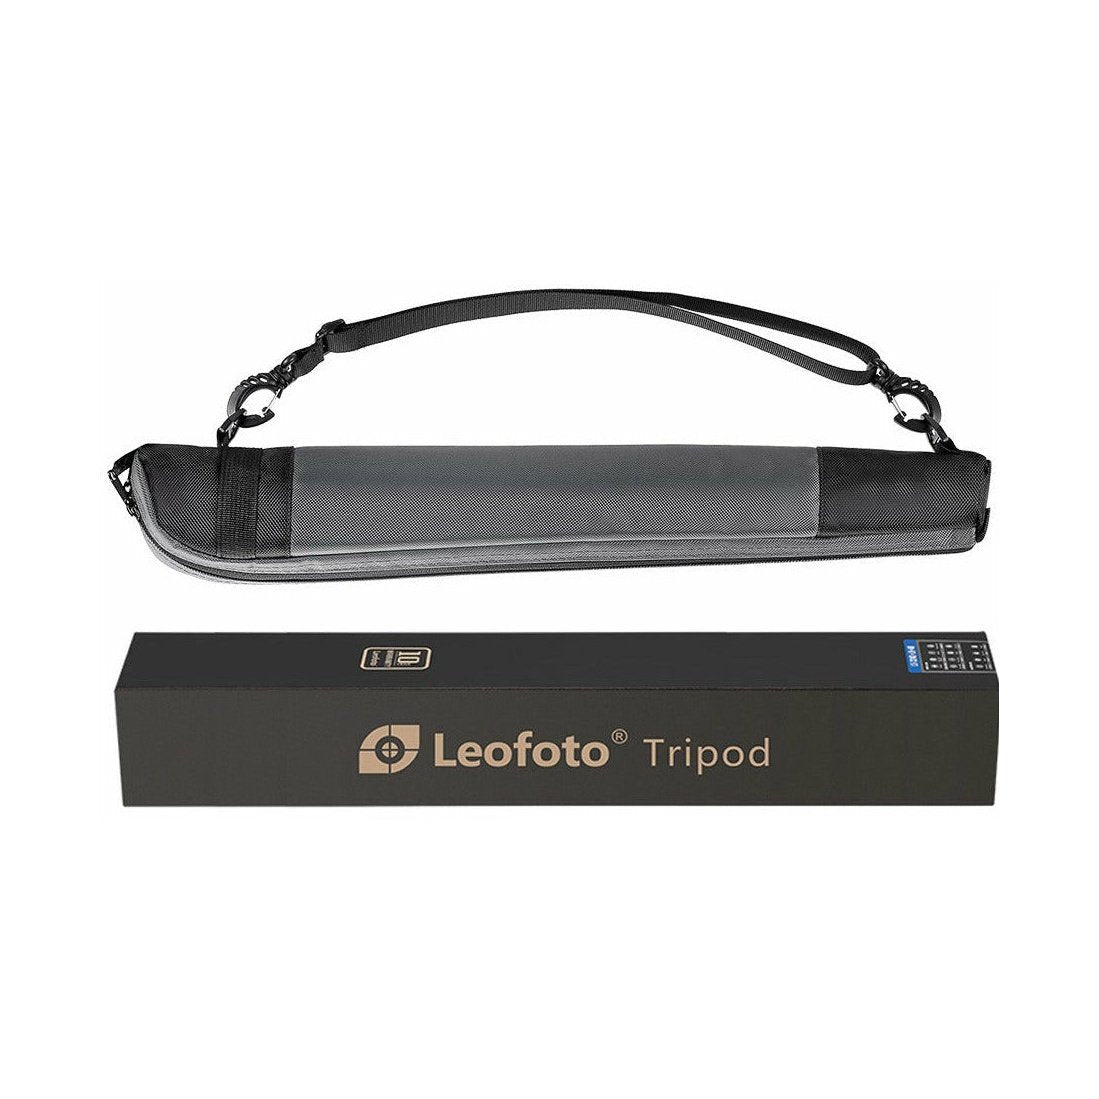 Leofoto MP-365C 5-Section Carbon Fiber Monopod leofoto-india